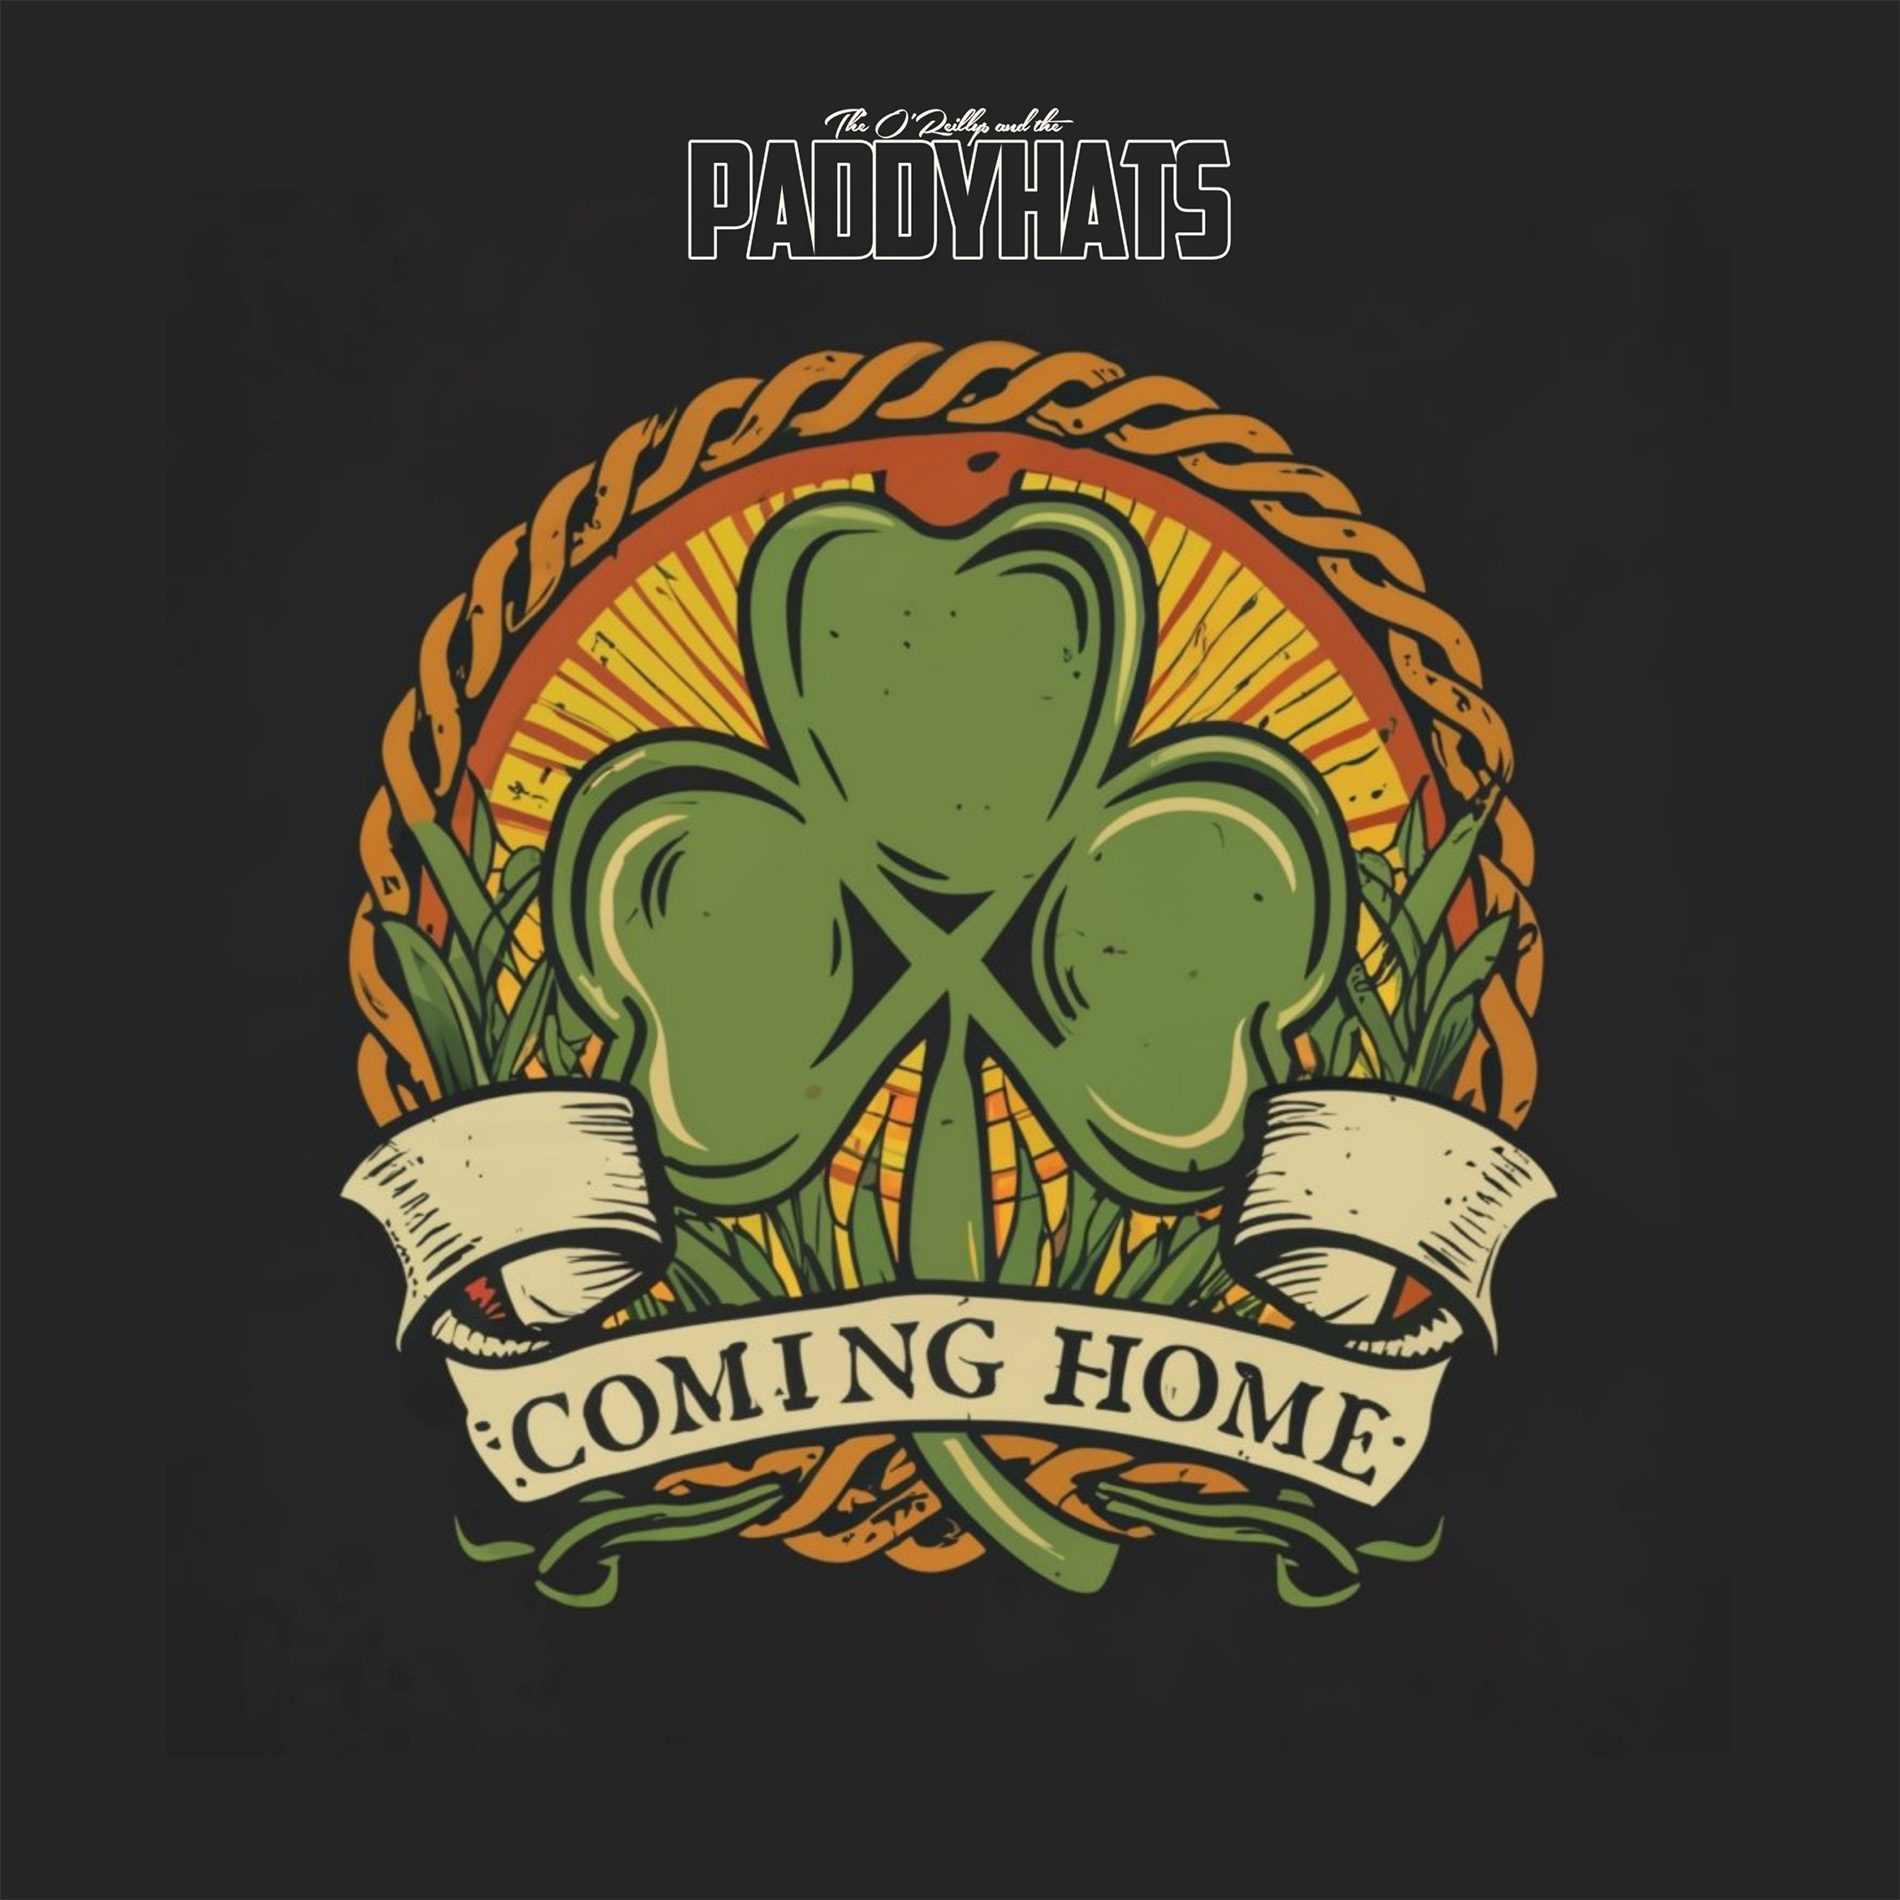 Wil je de groenste nacht van het jaar? – Bekijk onze nieuwe single “Coming Home For St. Patrick’s Day”